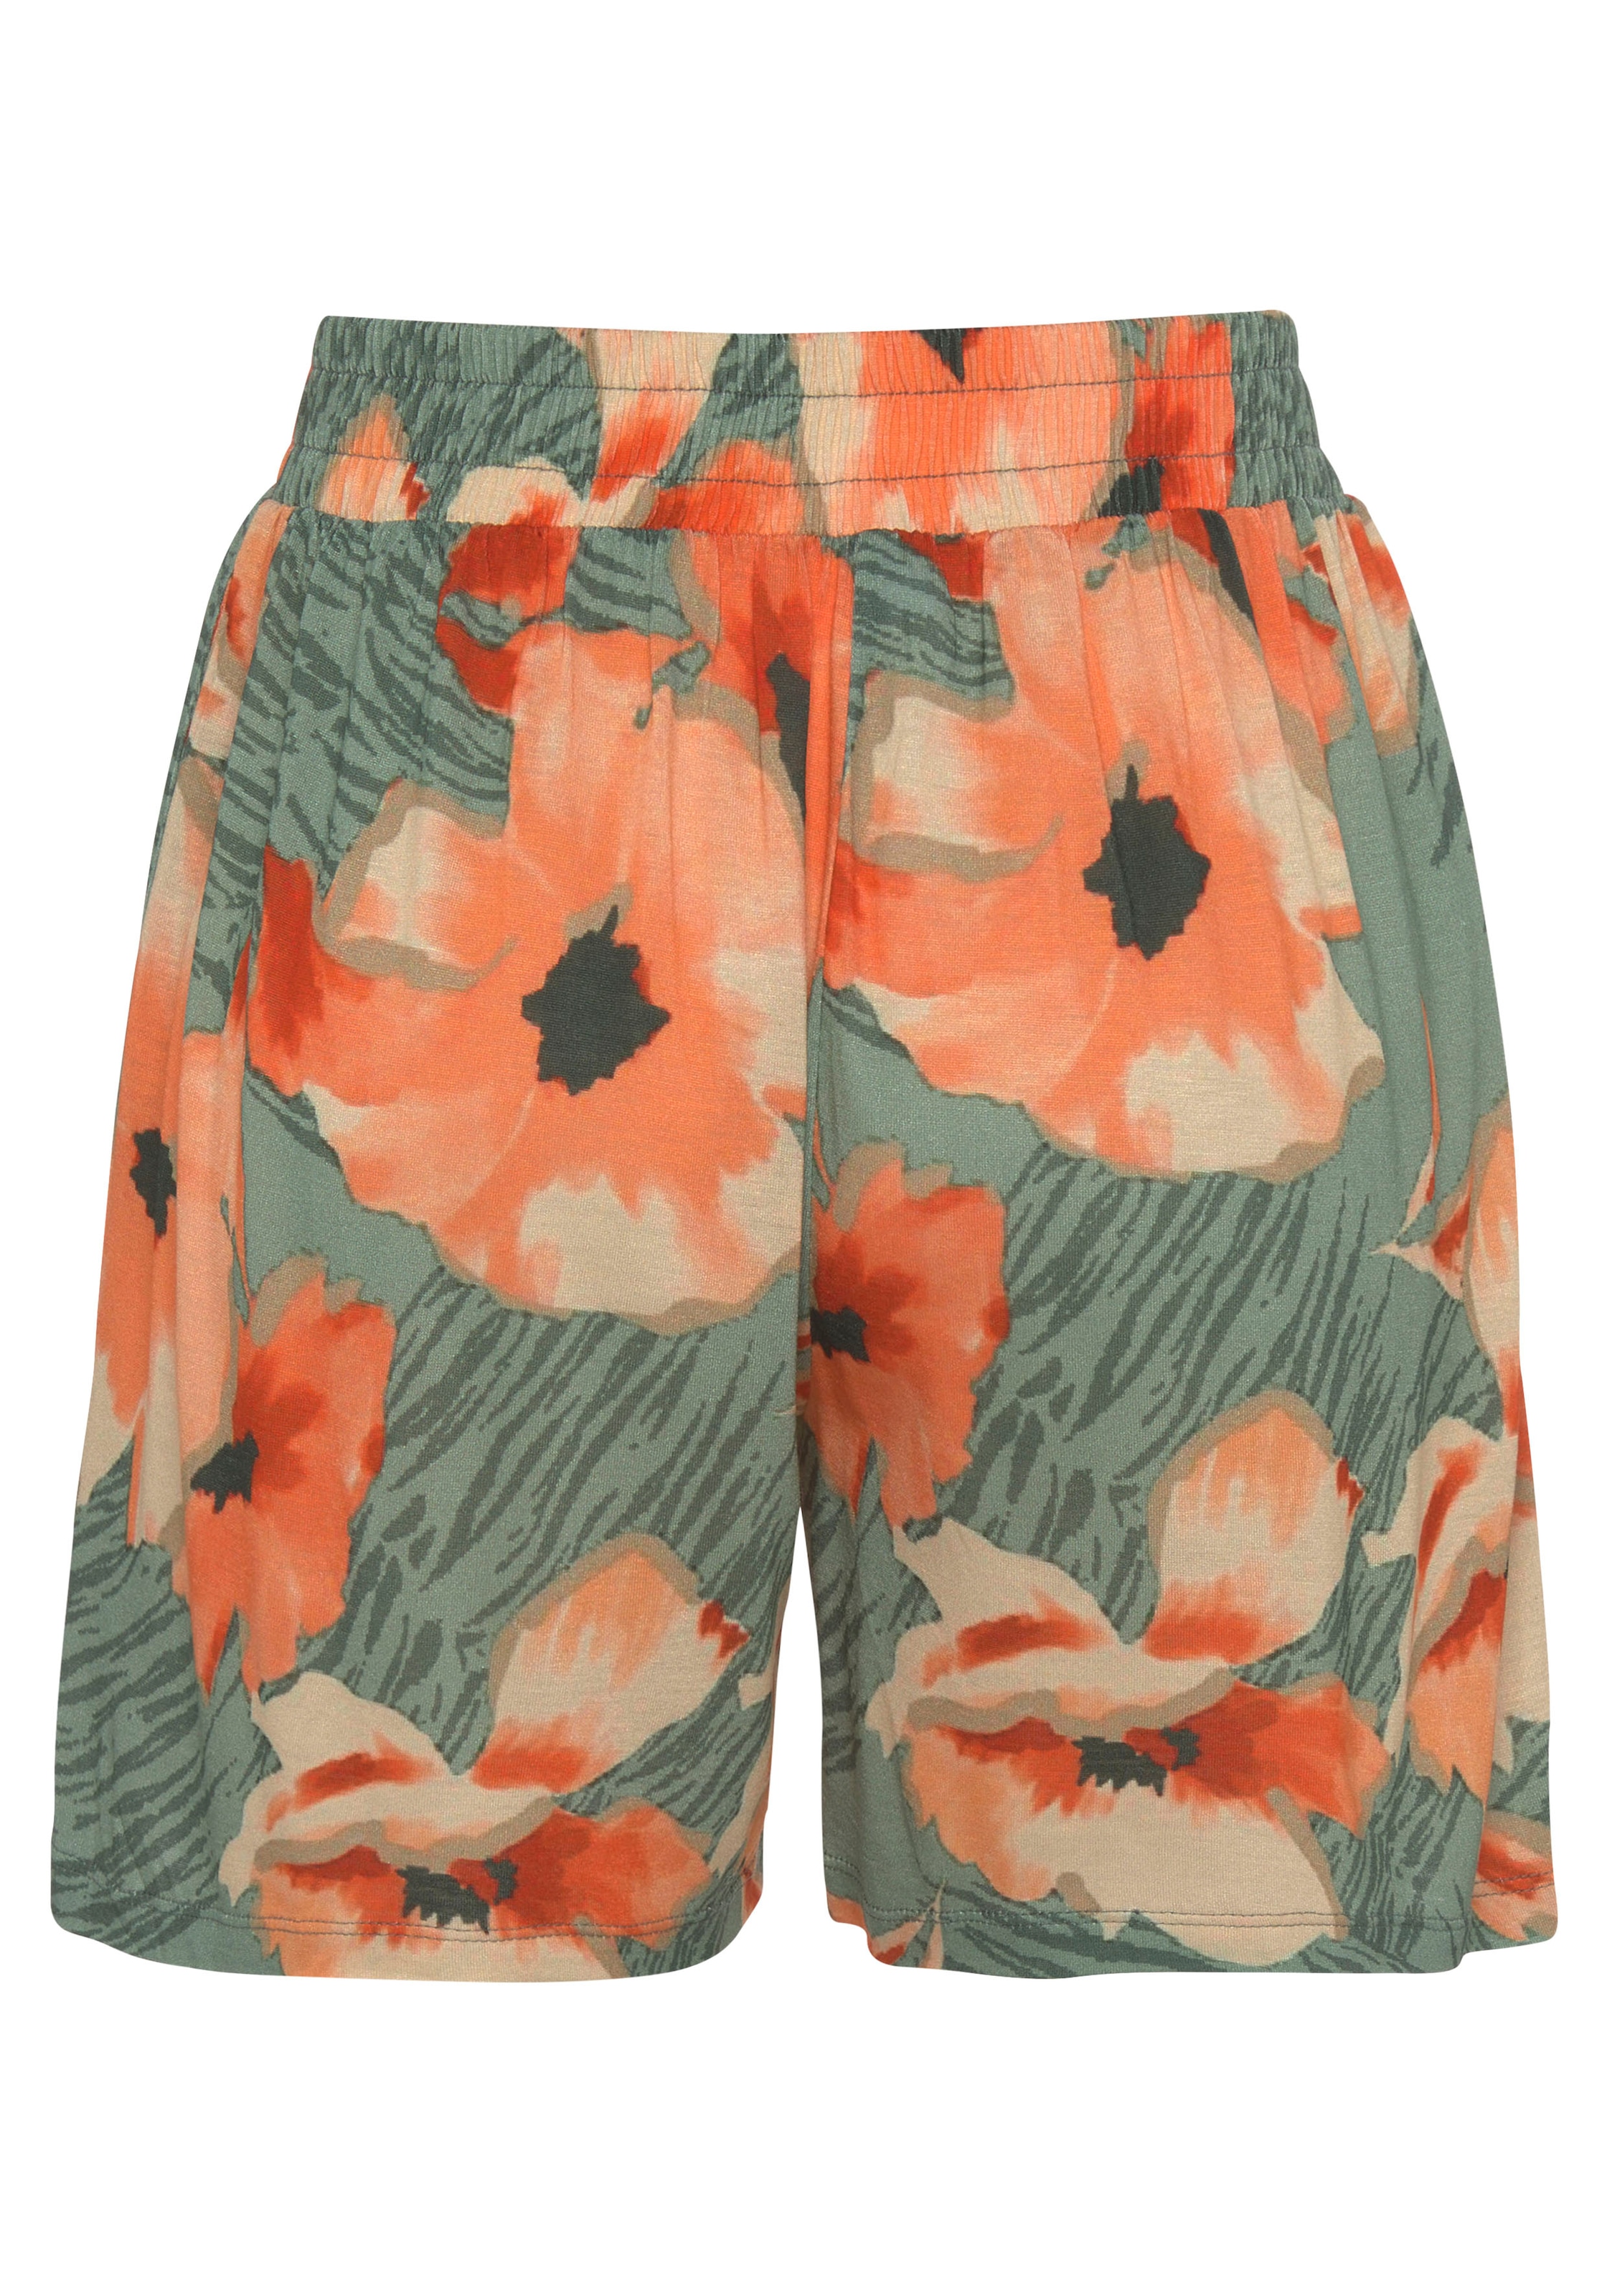 LASCANA Shorts, aus Viskosejersey mit Alloverdruck und Taschen, kurze Hose, sommerlich